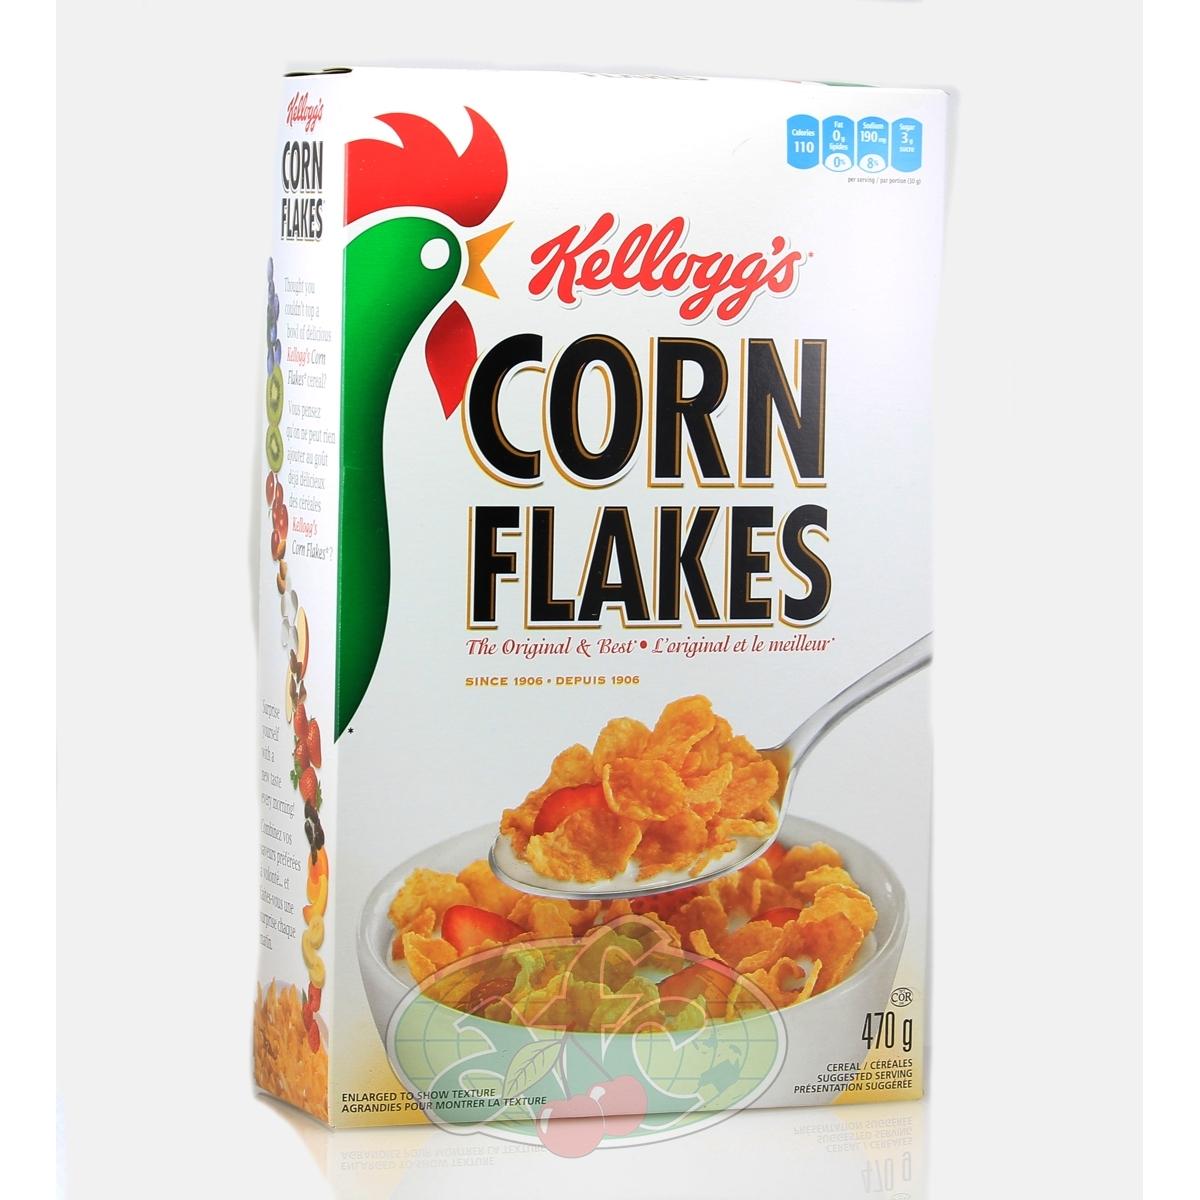 Kellogg’s Corn Flakes Kellogg’s Corn Flakes Flakes